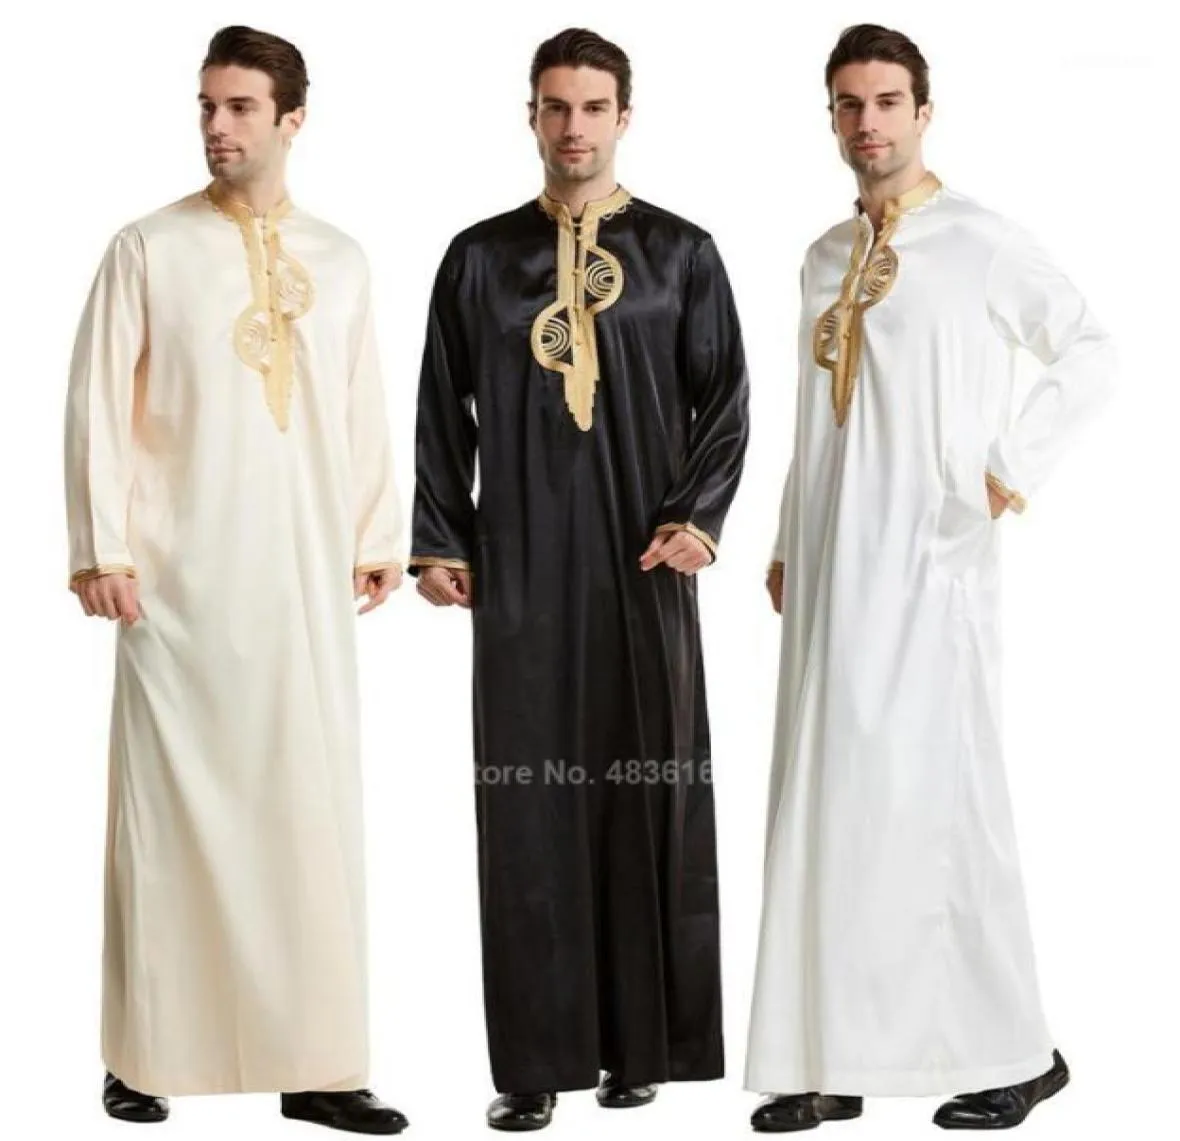 イスラム衣類の男性イスラム教徒のローブアラブ・トーベ・ラマダン衣装